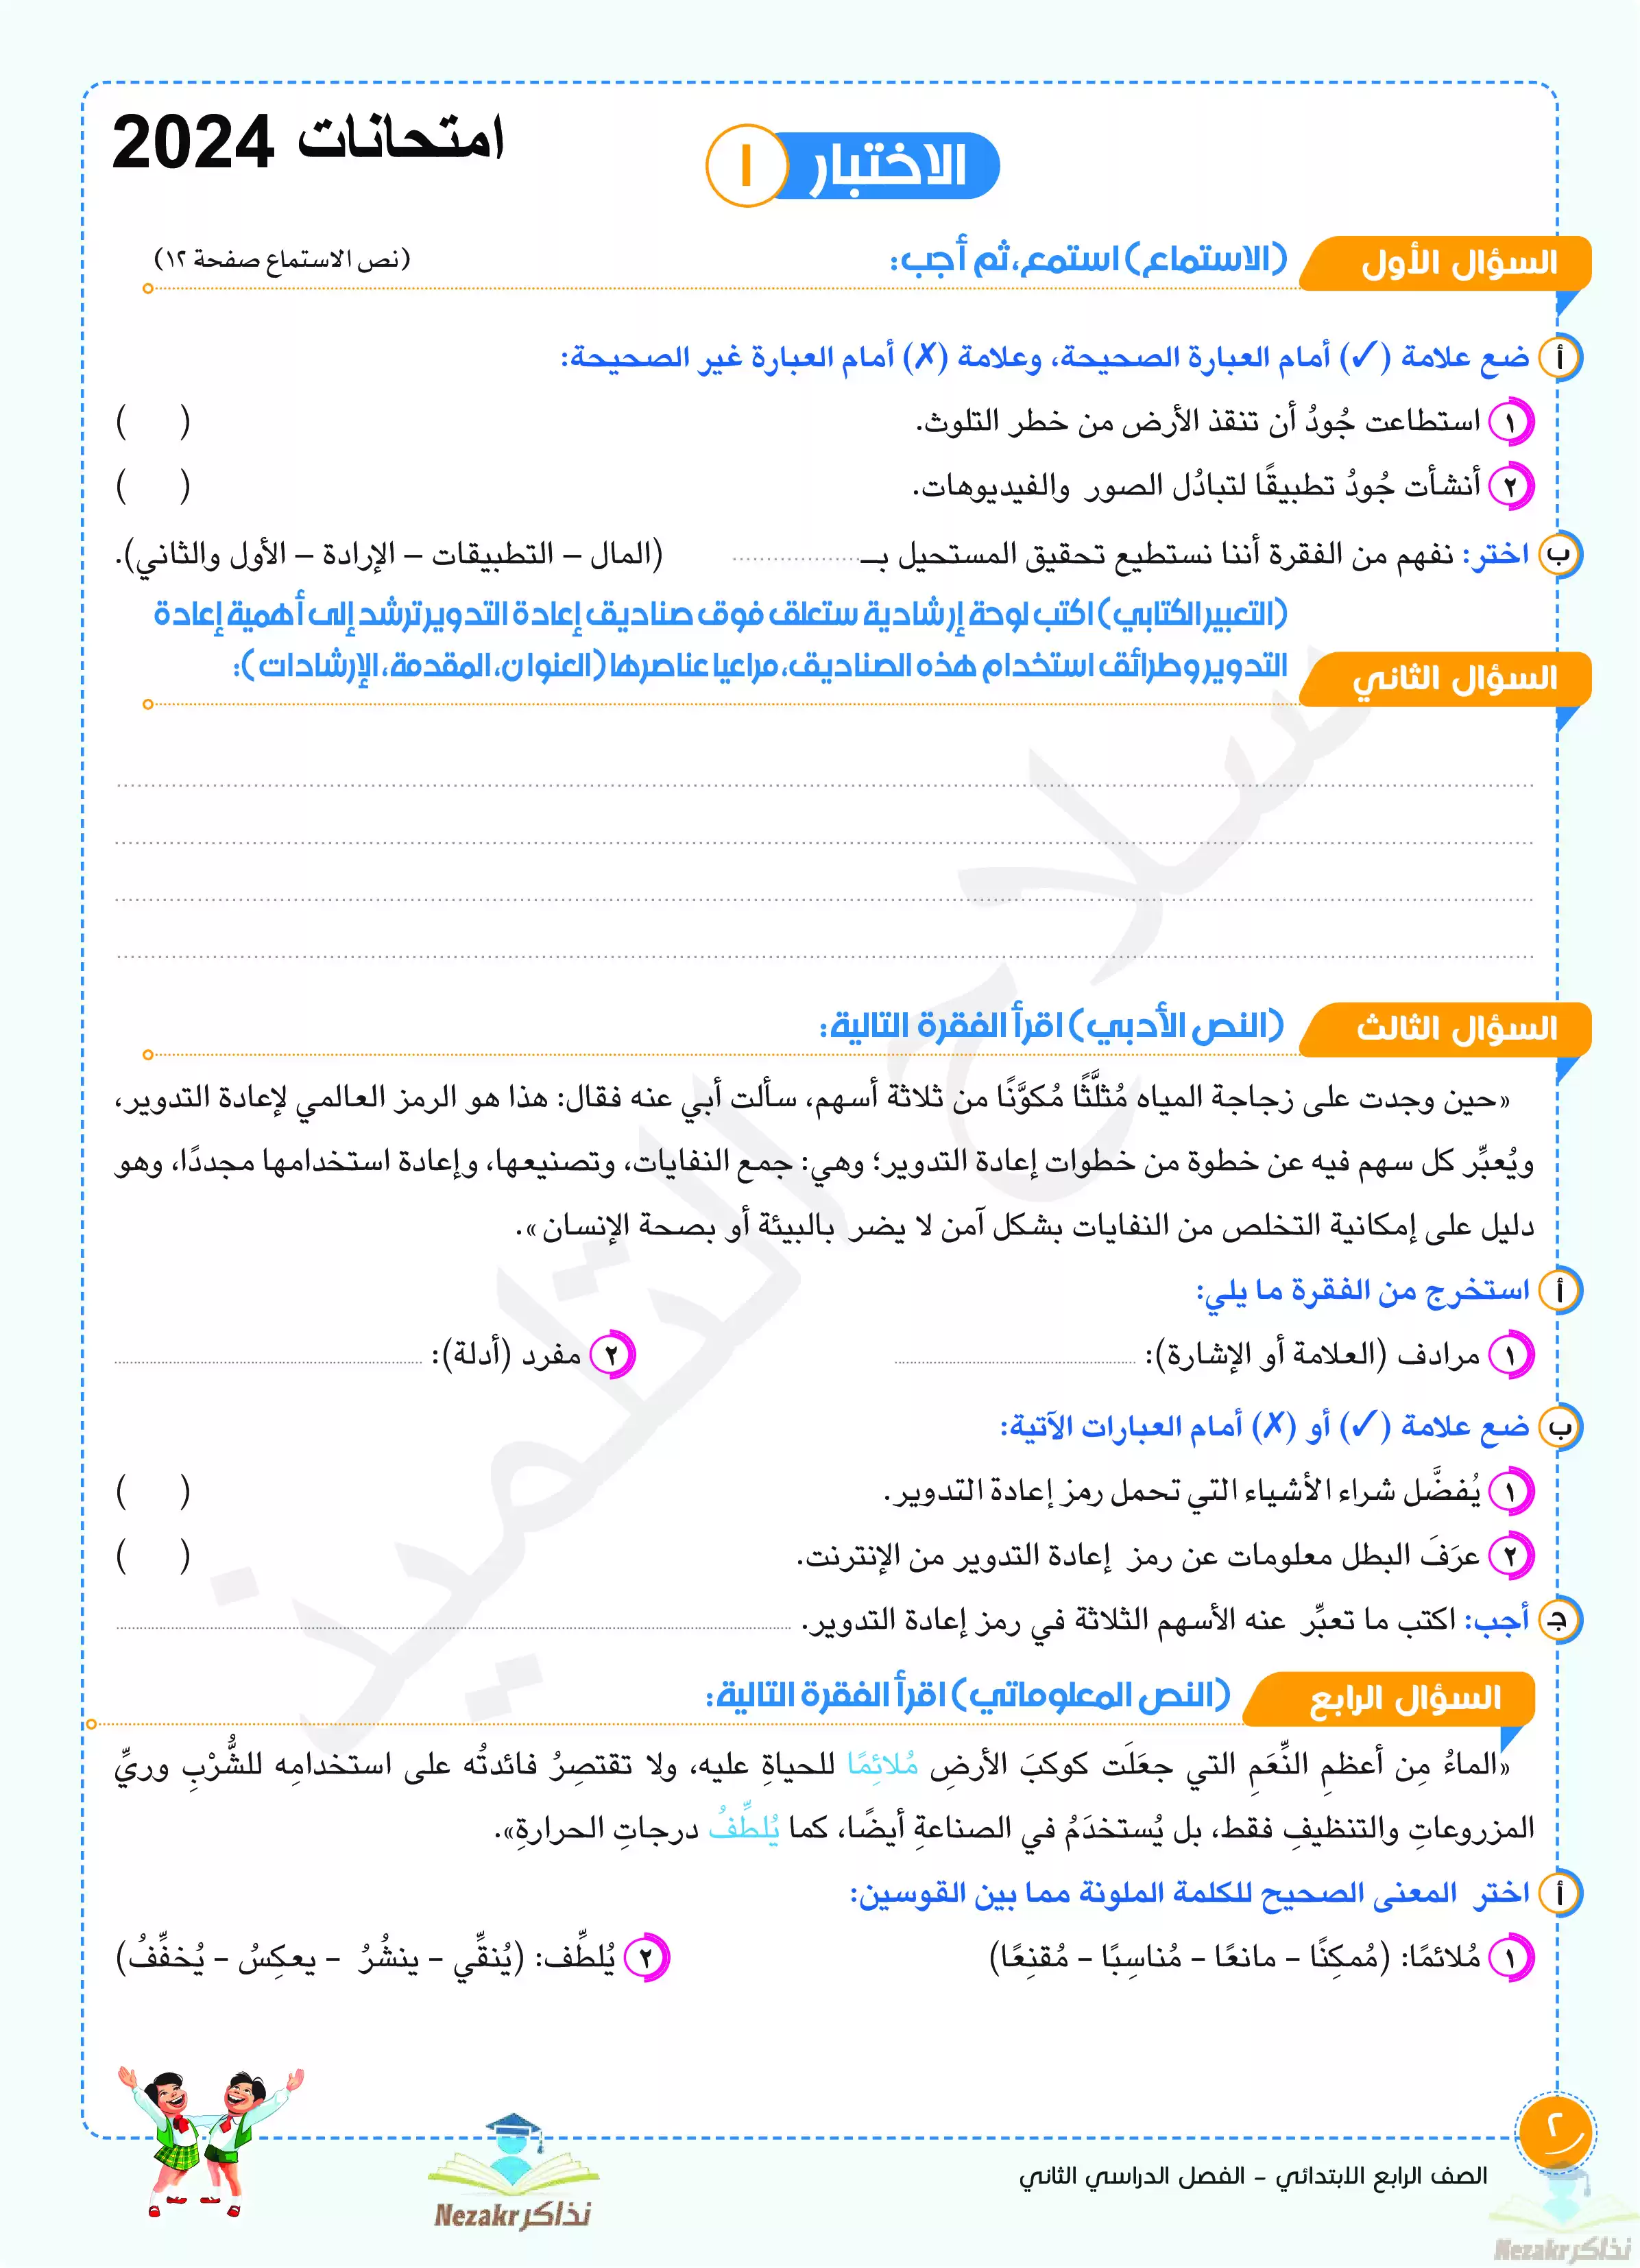 تحميل مراجعة عامة لغة عربية للصف الرابع الابتدائي شهر فبراير 2024 (متعددة المصادر)